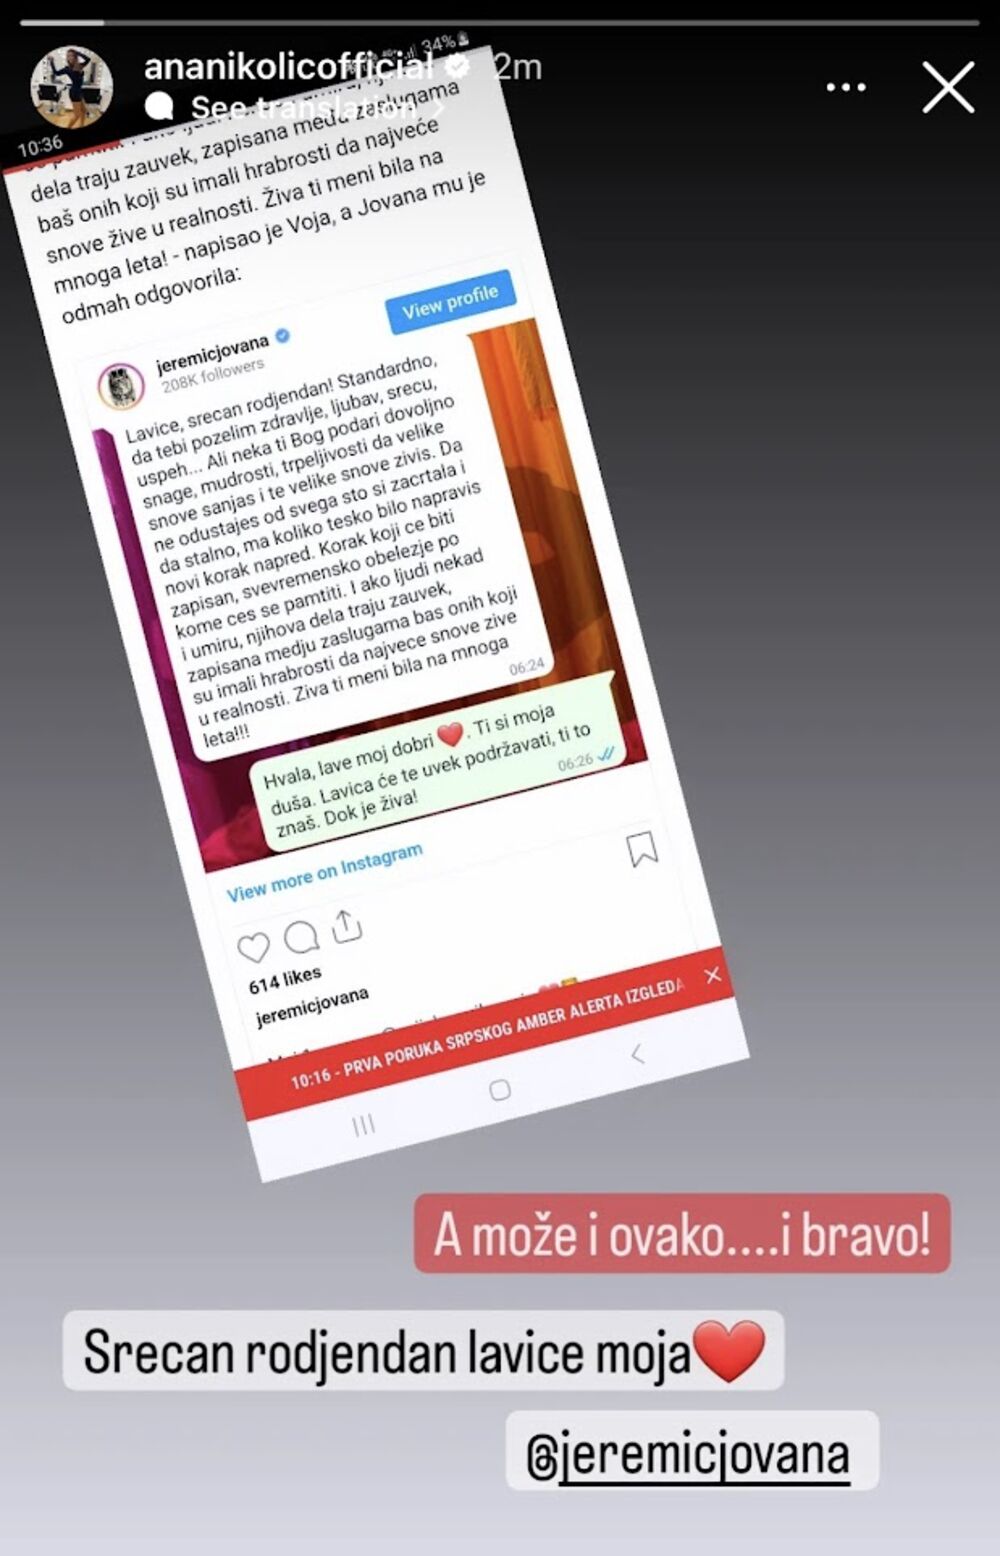 Čestitka Ane Nikolić upućena Jovani Jeremić